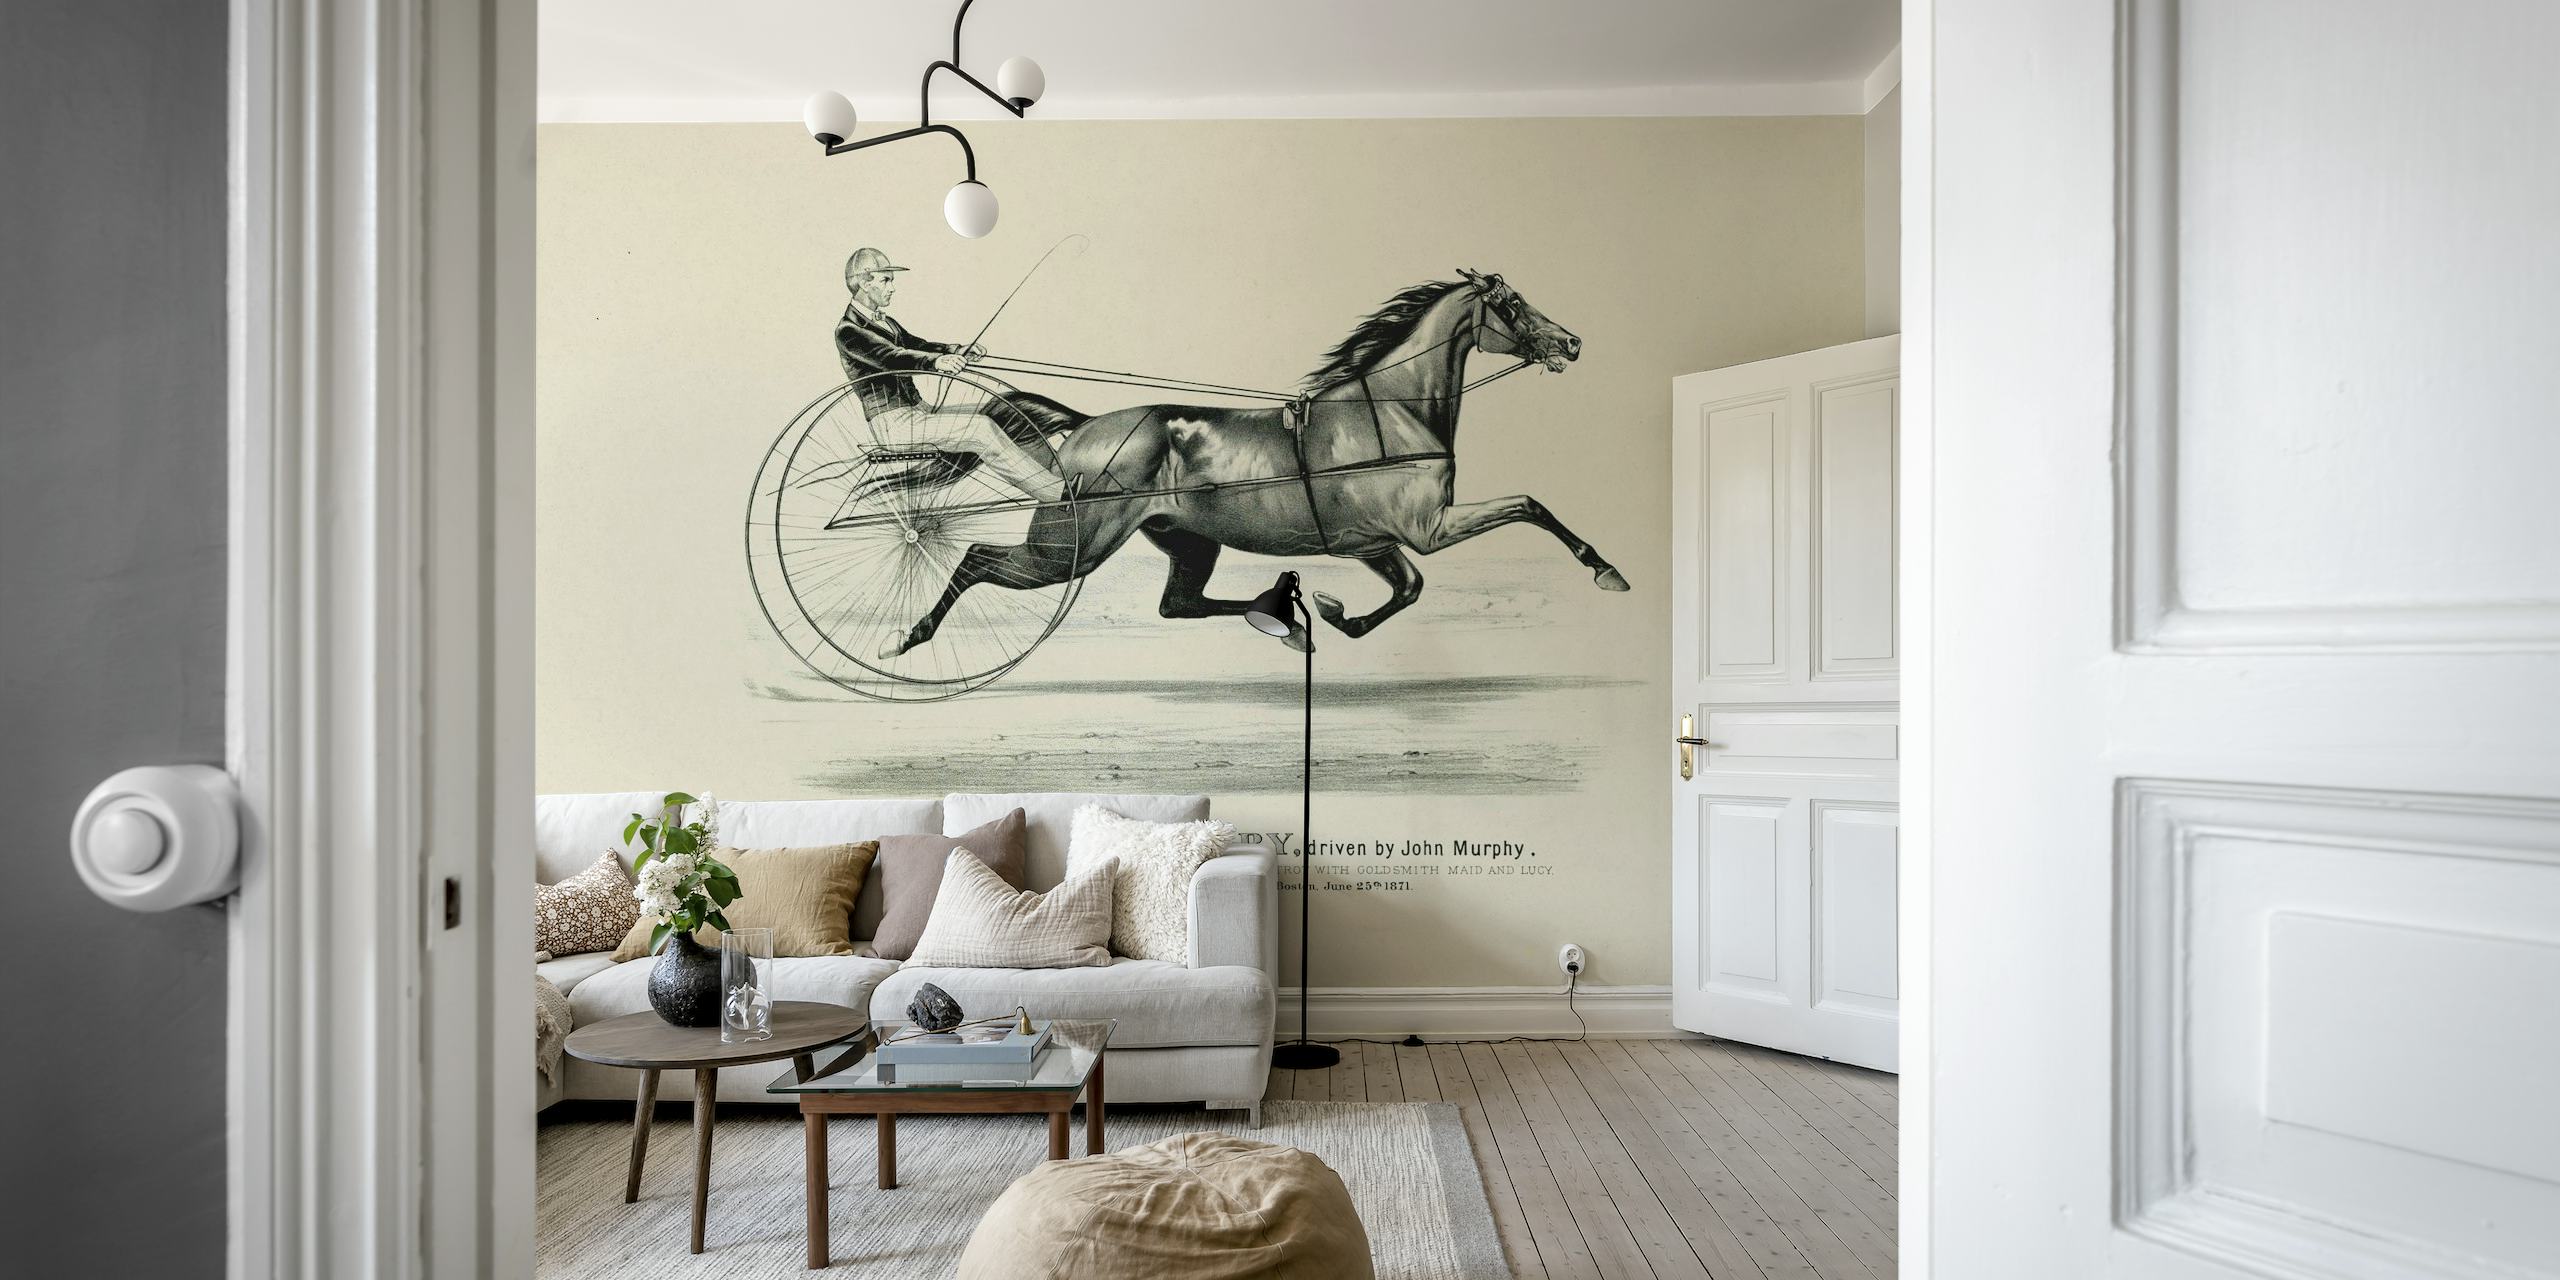 Povijesna umjetnička zidna slika o jahanju koja prikazuje konja i jahača u klasičnom stilu.